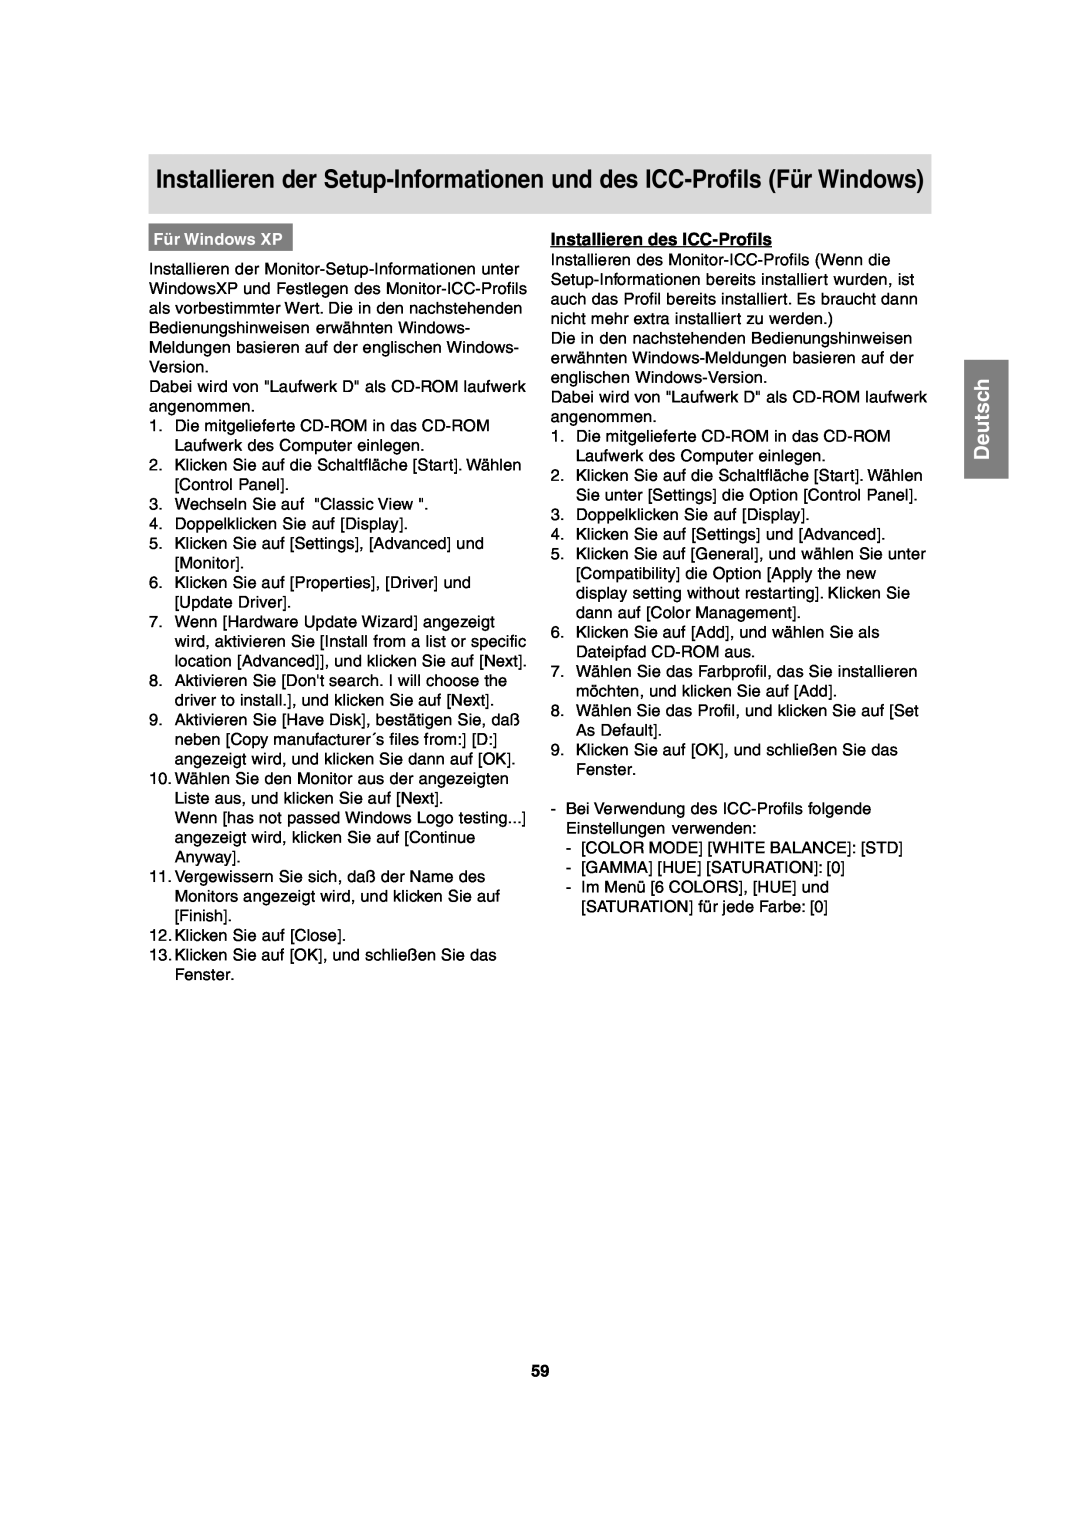 Sharp LL-T2020 operation manual Installieren des ICC-Profils, Für Windows XP, Deutsch 